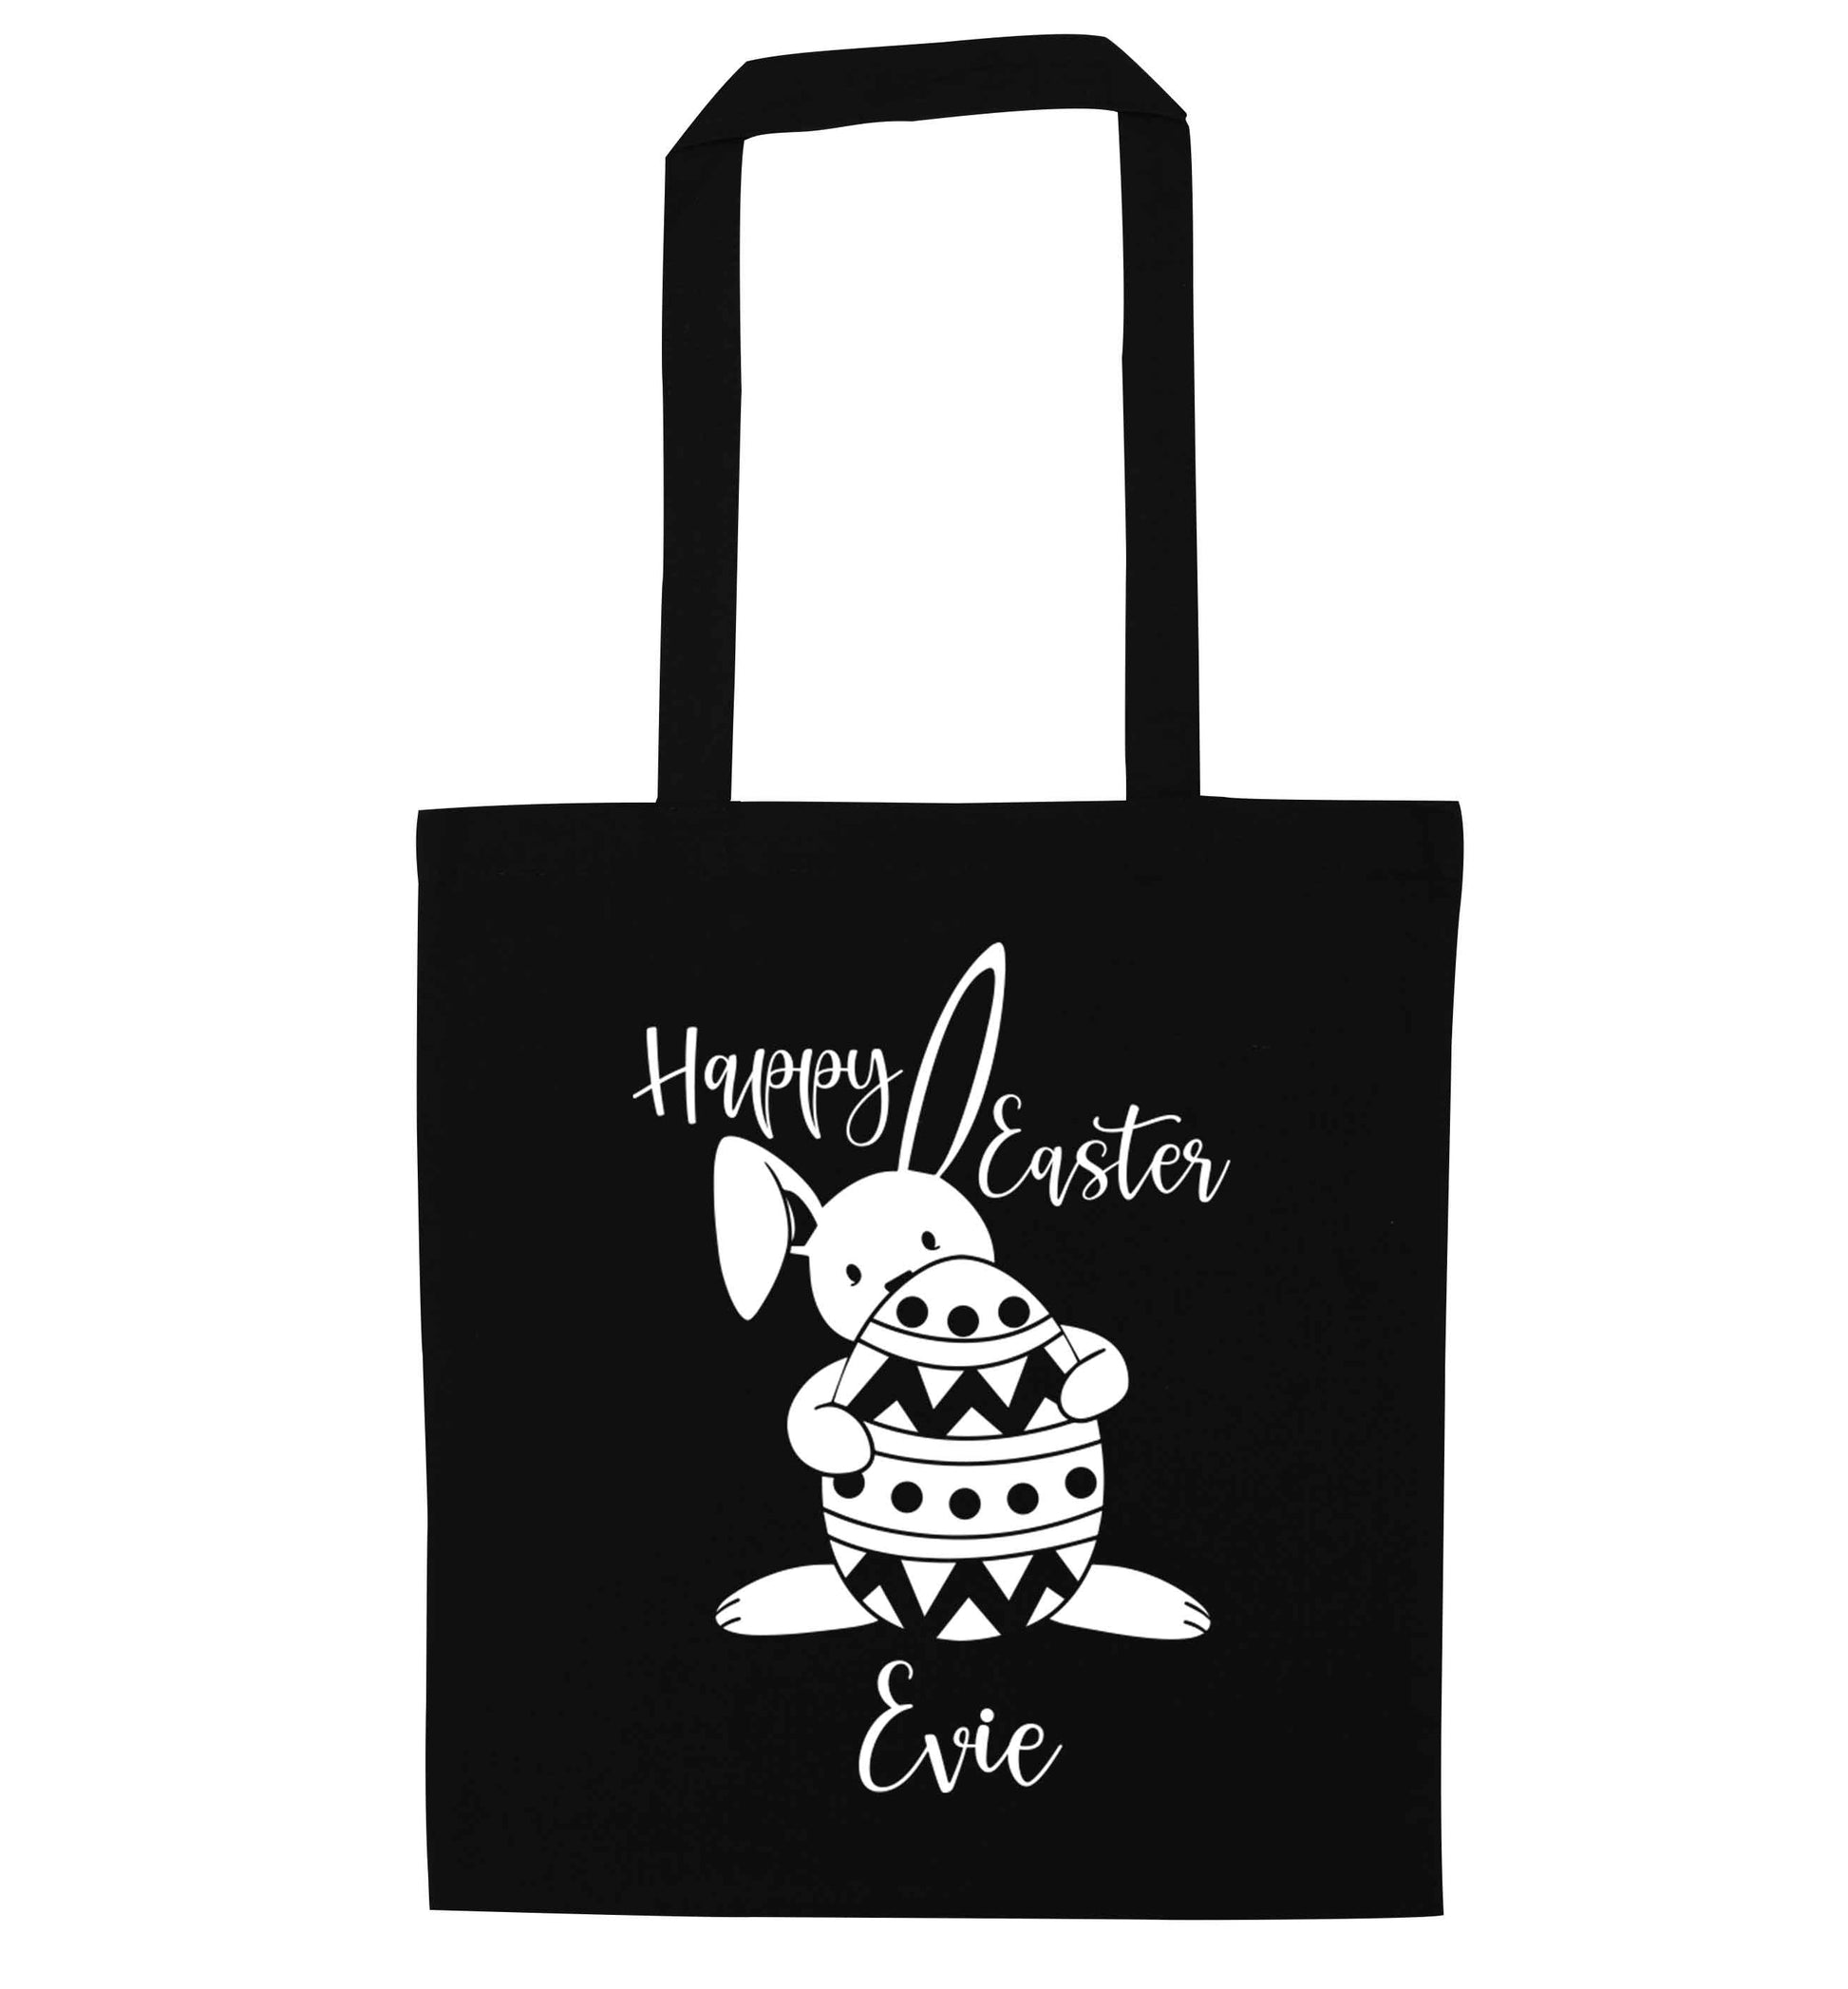 Happy Easter - personalised black tote bag